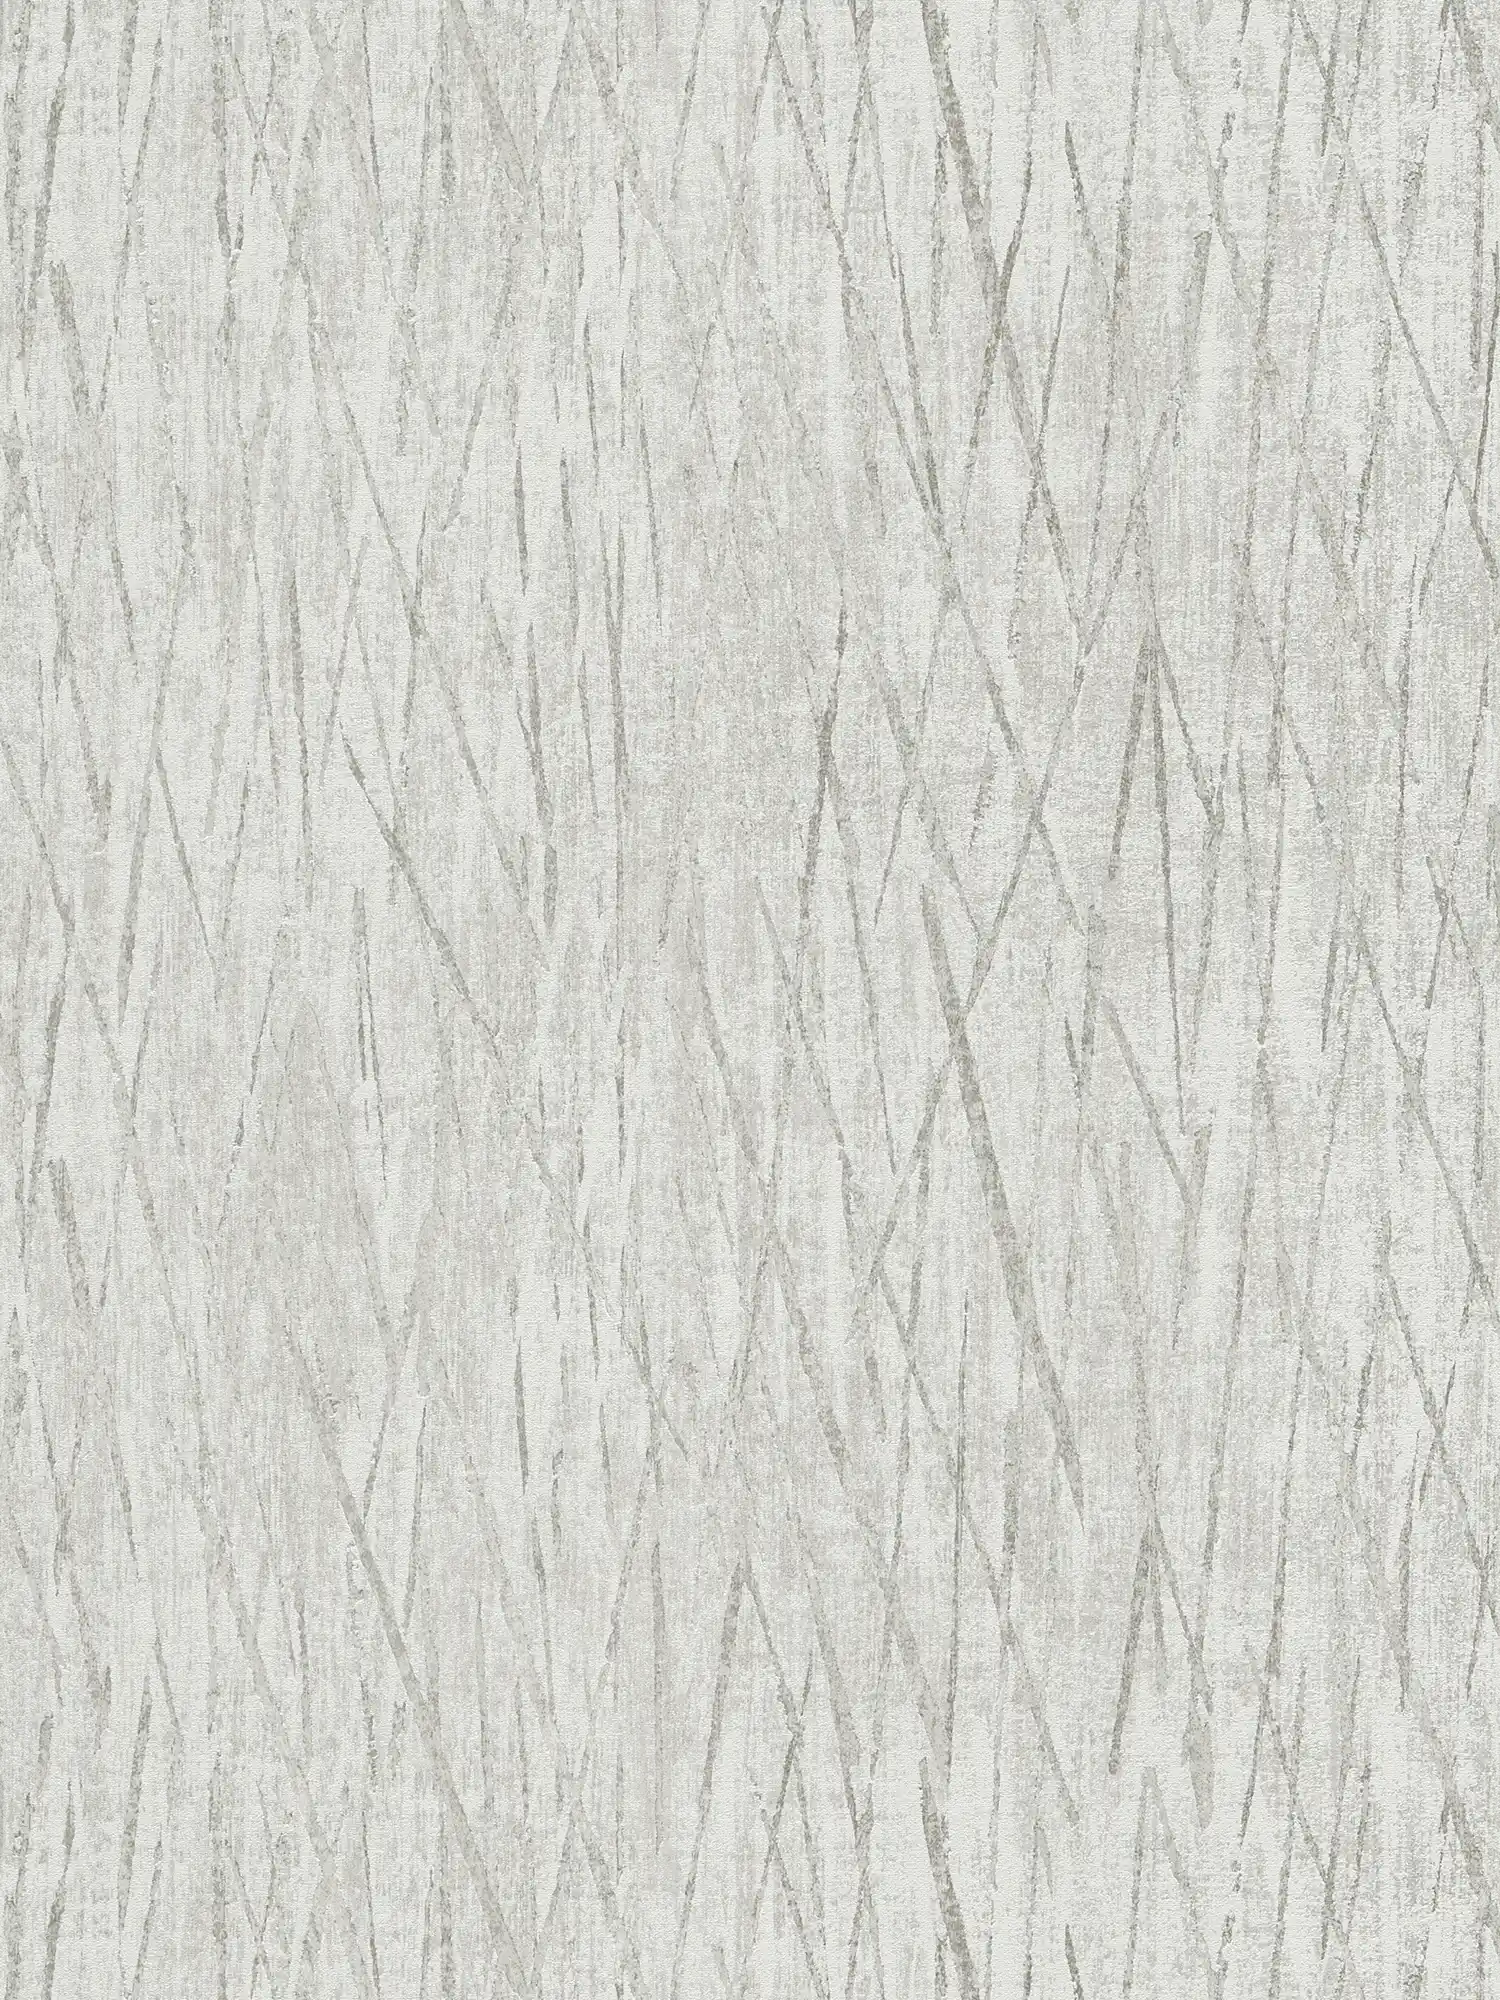 Papier peint texturé avec couleurs métallisées - gris, métallique
